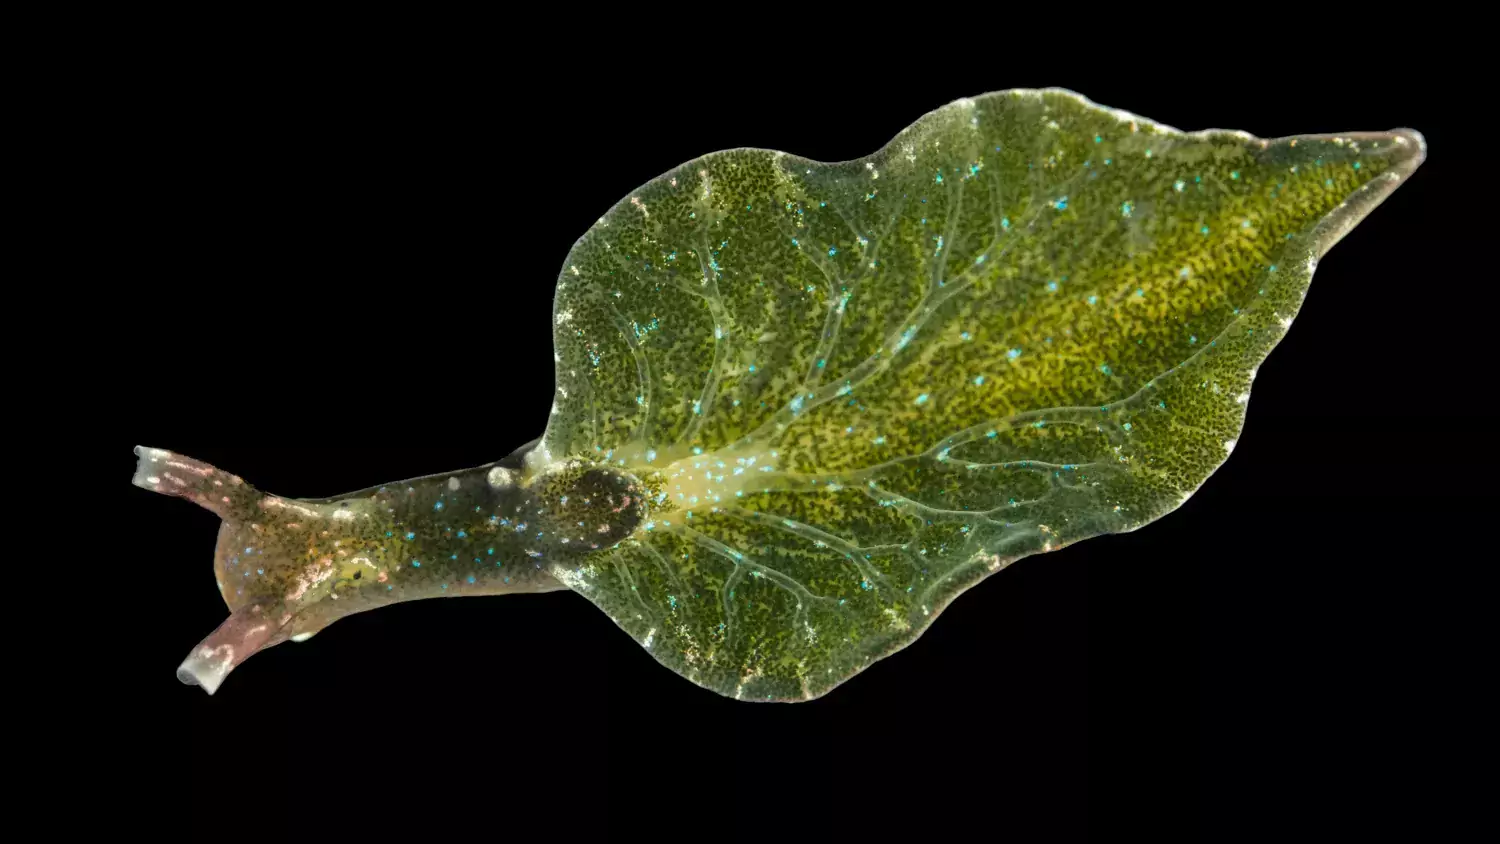 Elysia viridis (svenskt namn blåprickig solbadare) är en skallös snäcka som lever på grönalger och extraherar algens kloroplaster (där fotosyntesen äger rum).